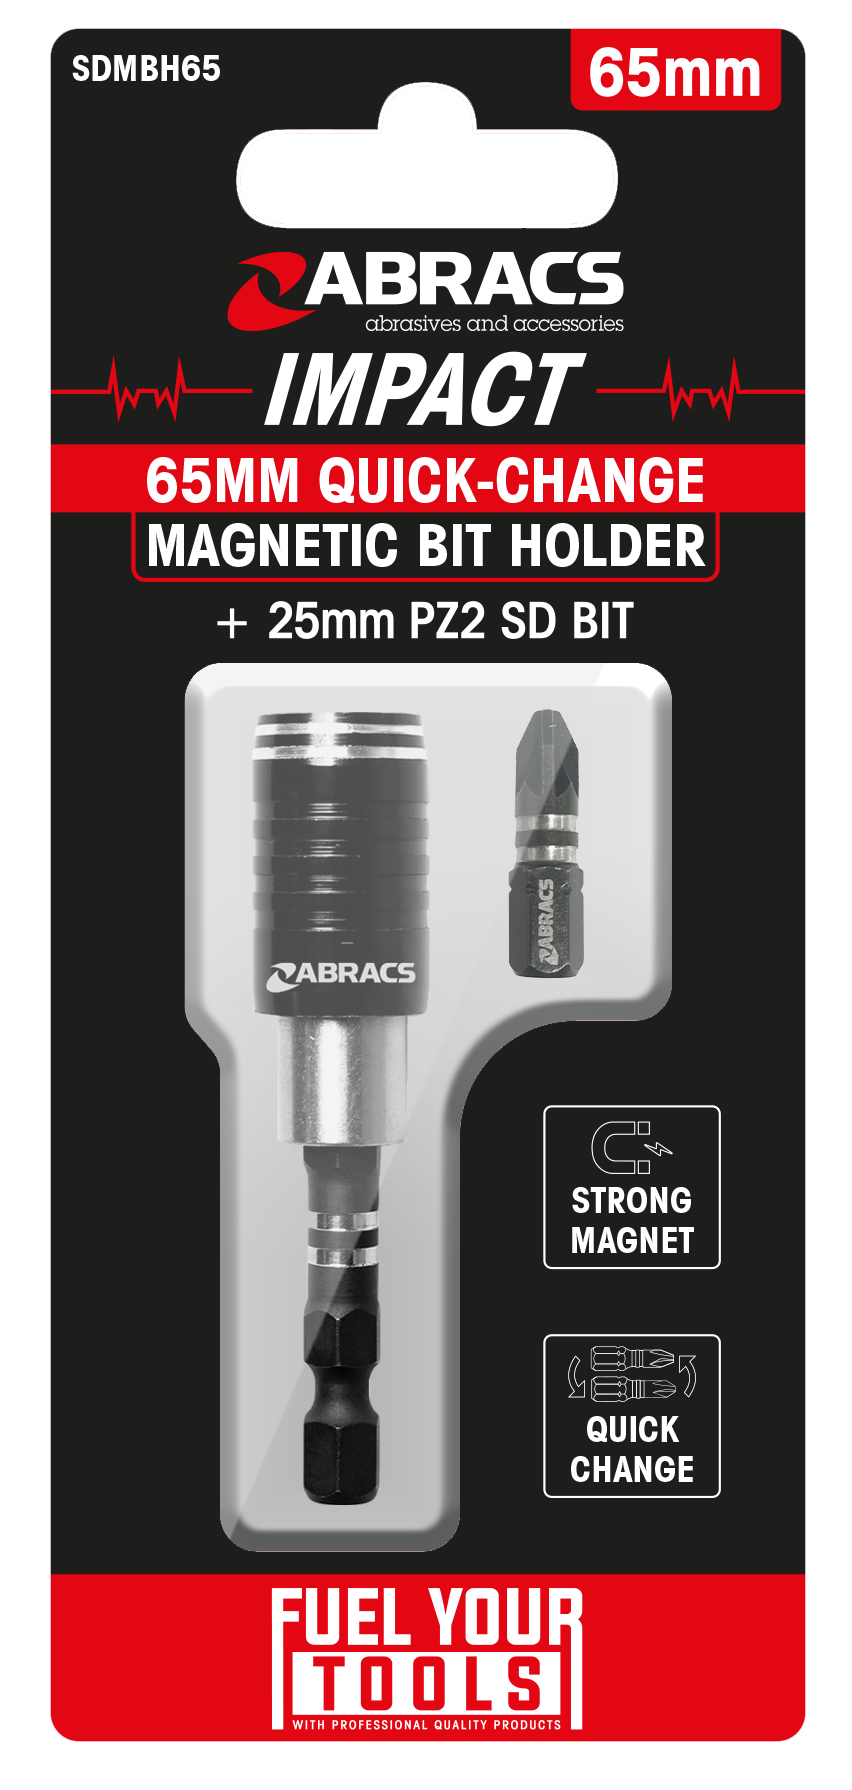 SDMBH65 Quick-Change 65mm Magnetic Bit Holder  
+ 25mm PZ2 S/D Bit